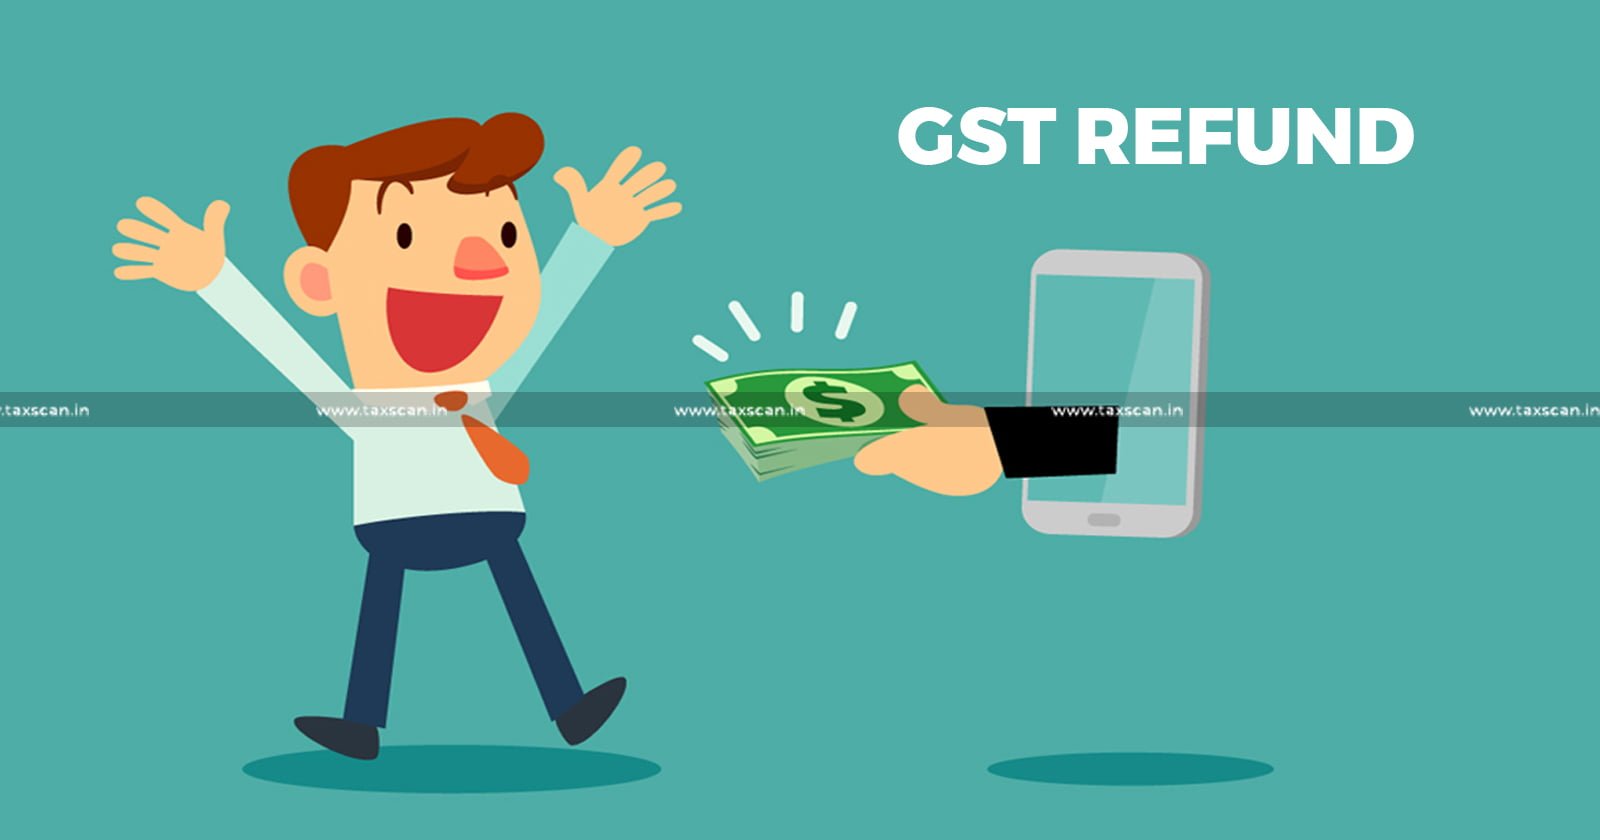 GST Refund Claim in Transition Phase - GST Refund Claim - GST Refund - Calcutta Highcourt - Refund - taxscan